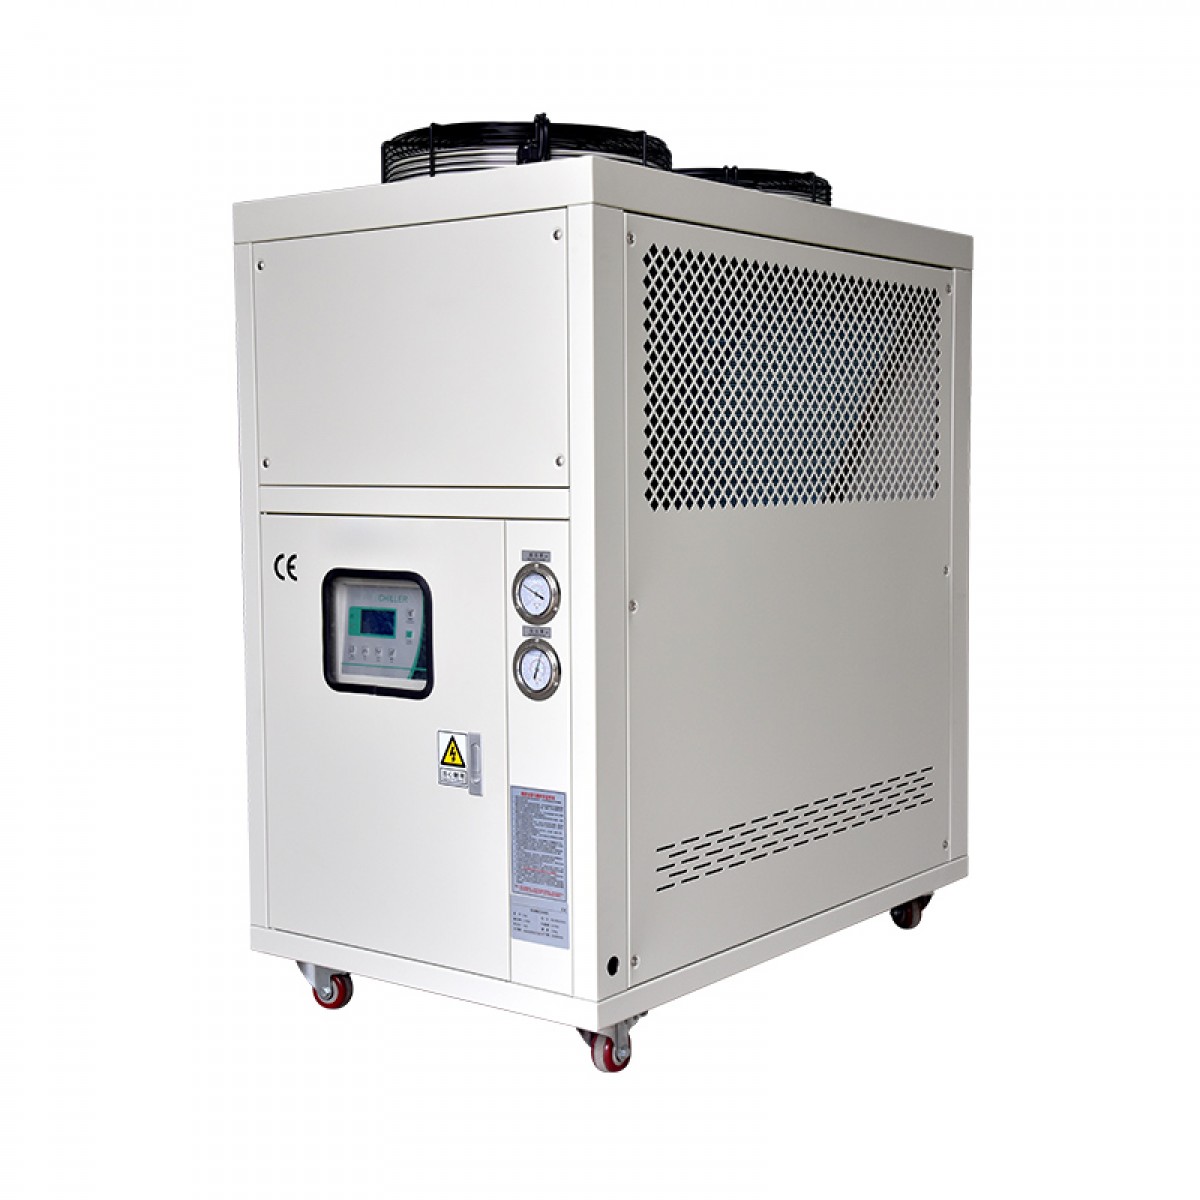 冷水机小型工业注塑模具制冷机高效水循环降温凉水机冰水机